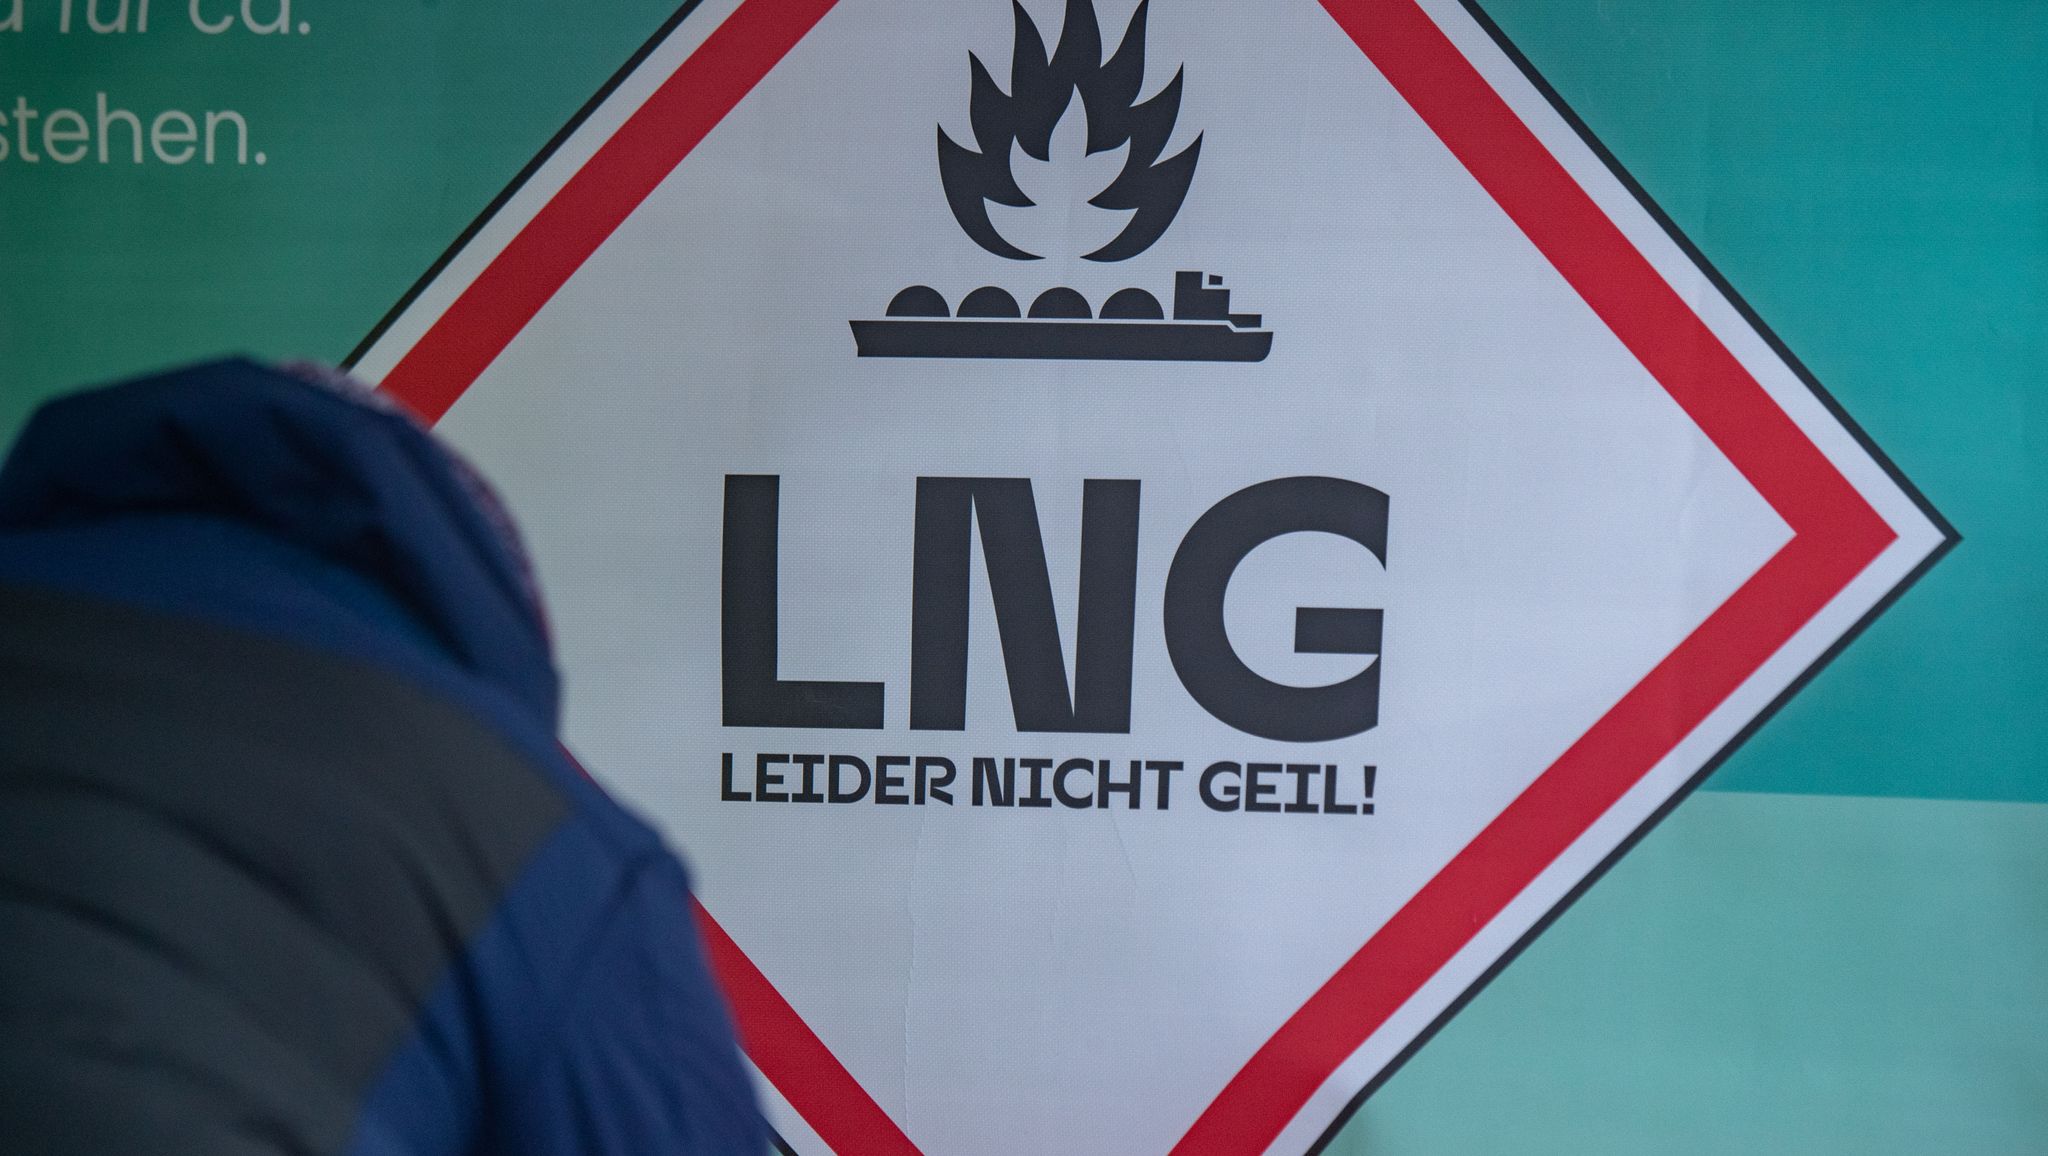 «LNG - Leider nicht geil» steht am Stand des Aktionsbündnis gegen das geplante LNG Flüssigerdgas-Terminal.